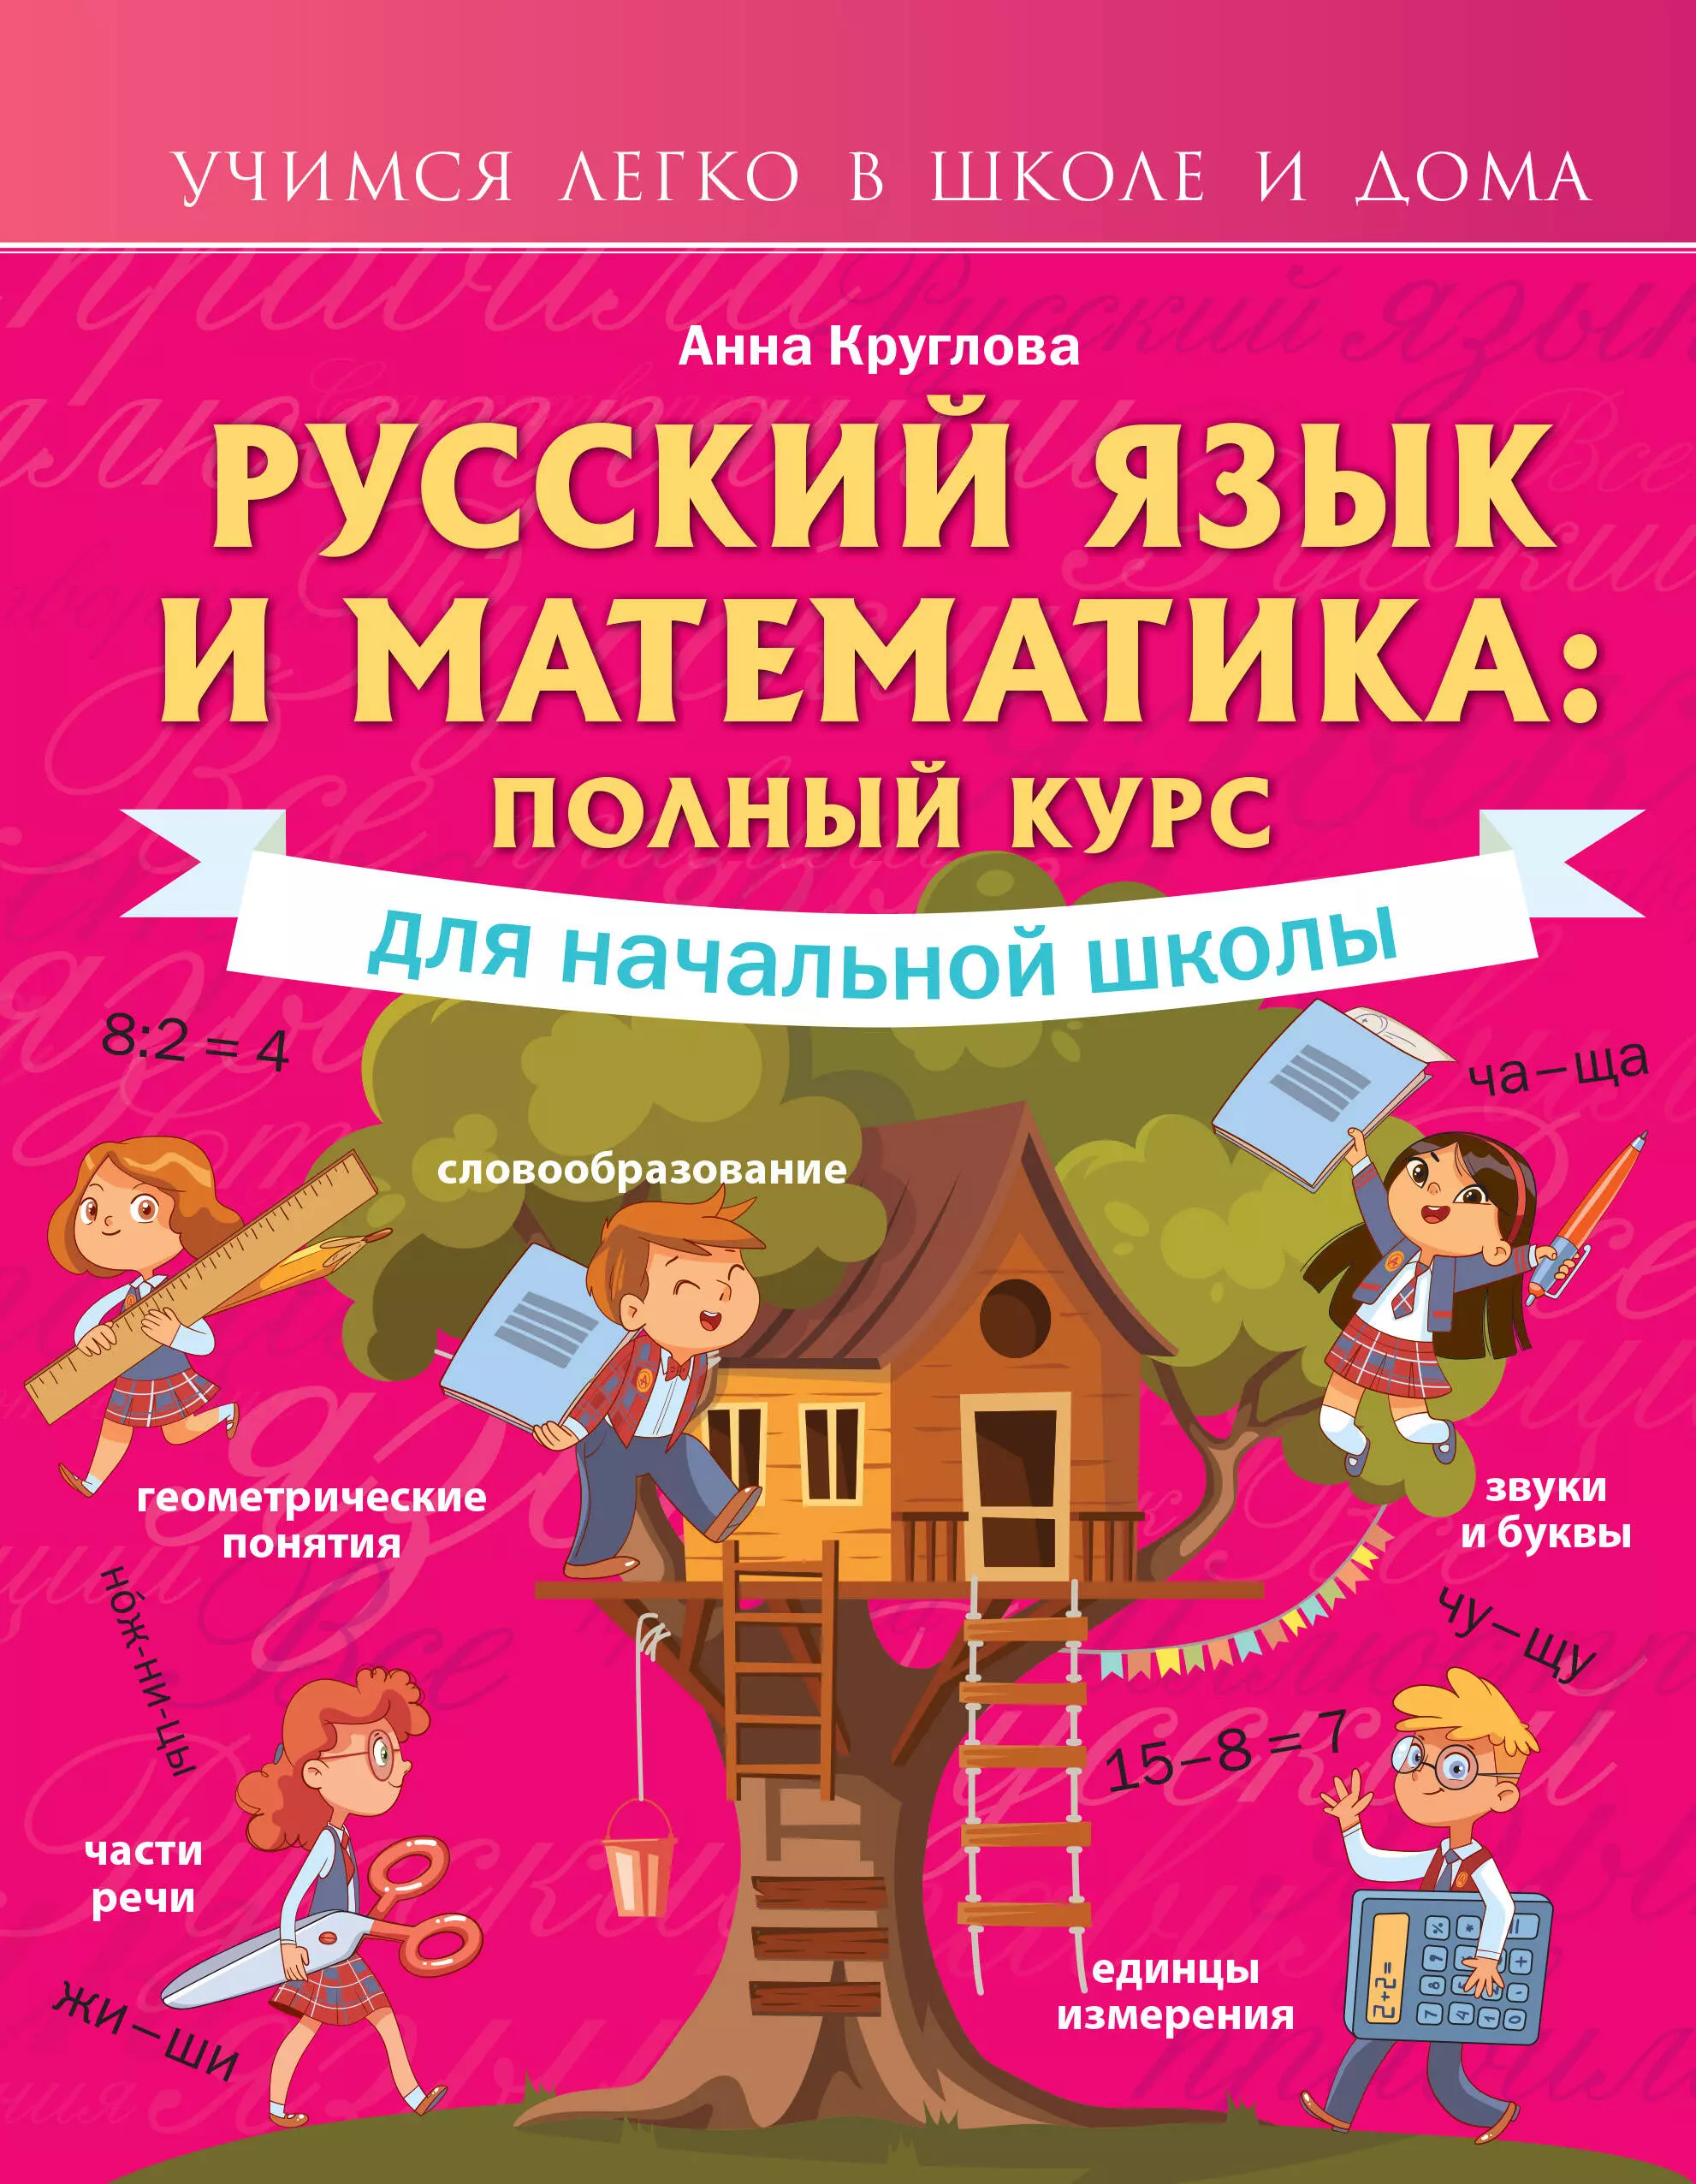 Круглова Анна - Русский язык и математика: полный курс для начальной школы